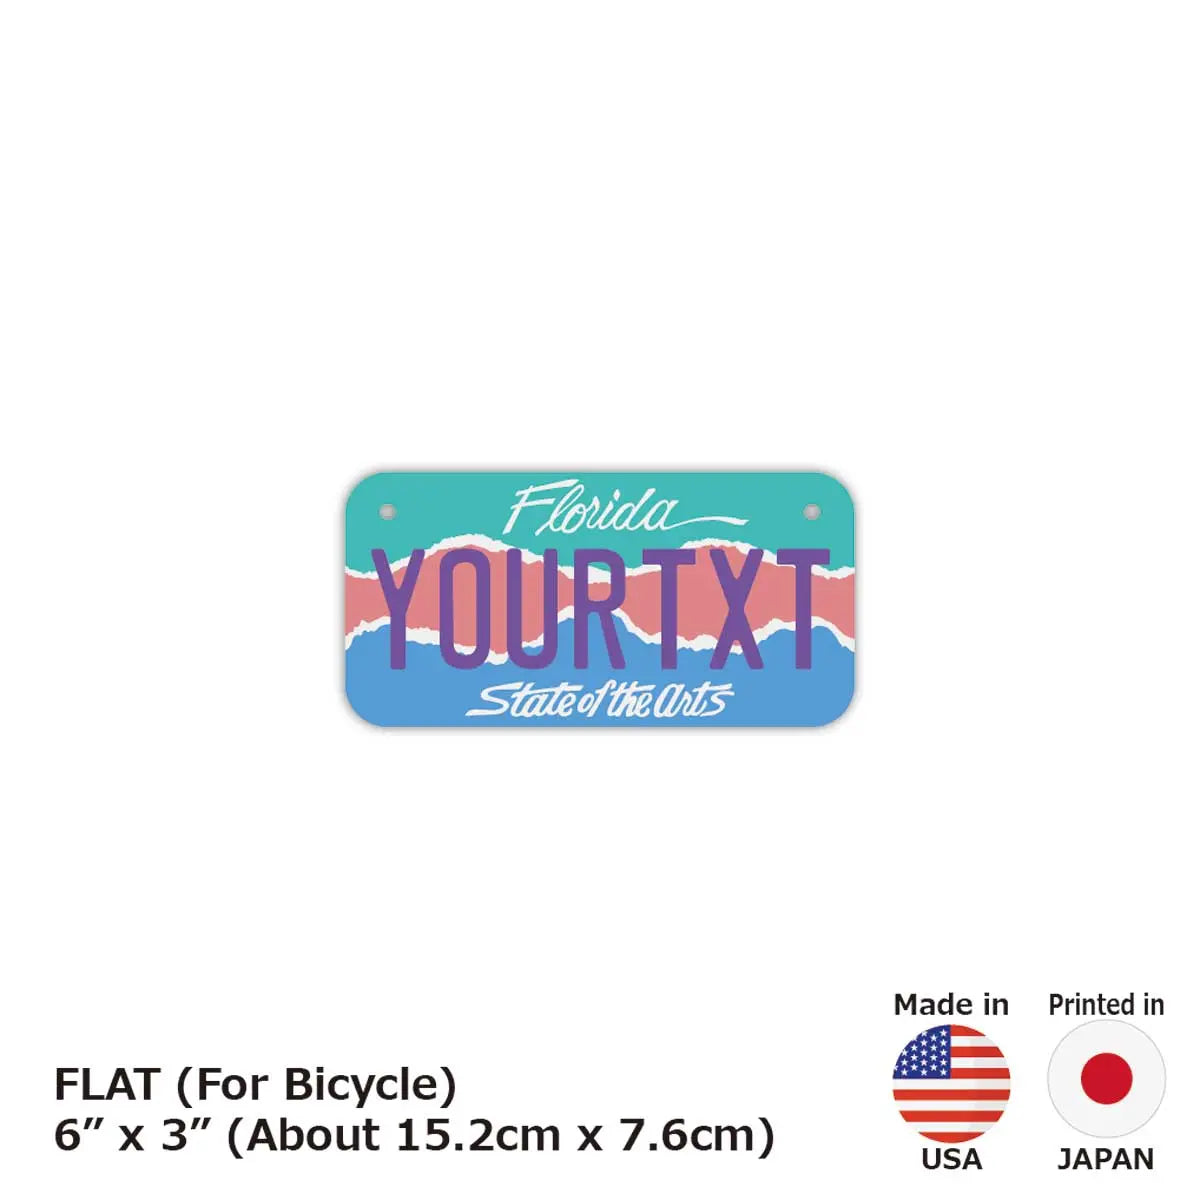 【小・自転車用】フロリダ・アート/オリジナルアメリカナンバープレート PL8HERO